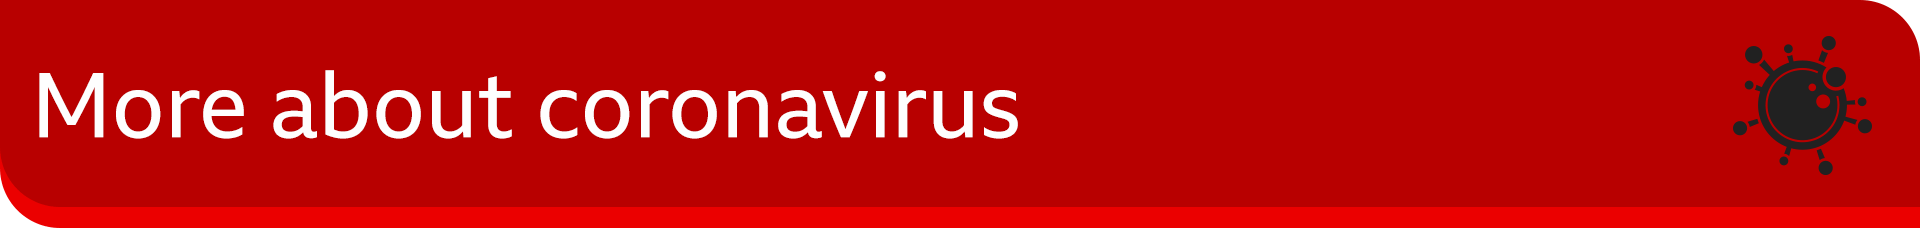 más información sobre el coronavirus ''more about coronavirus'